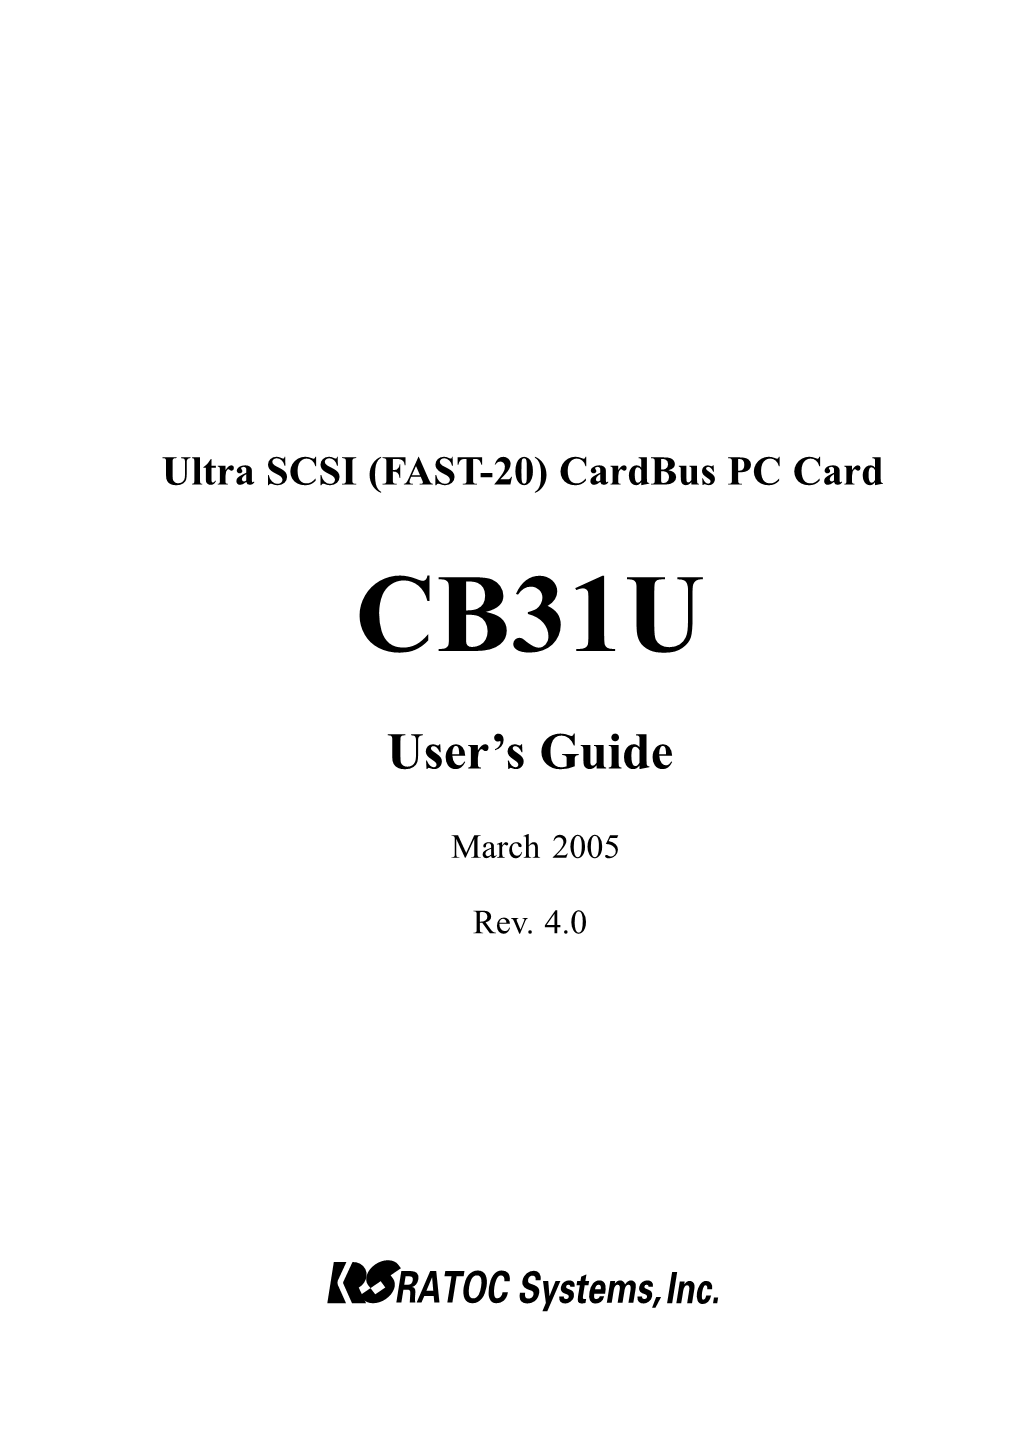 Ultra SCSI (FAST-20) Cardbus PC Card CB31U